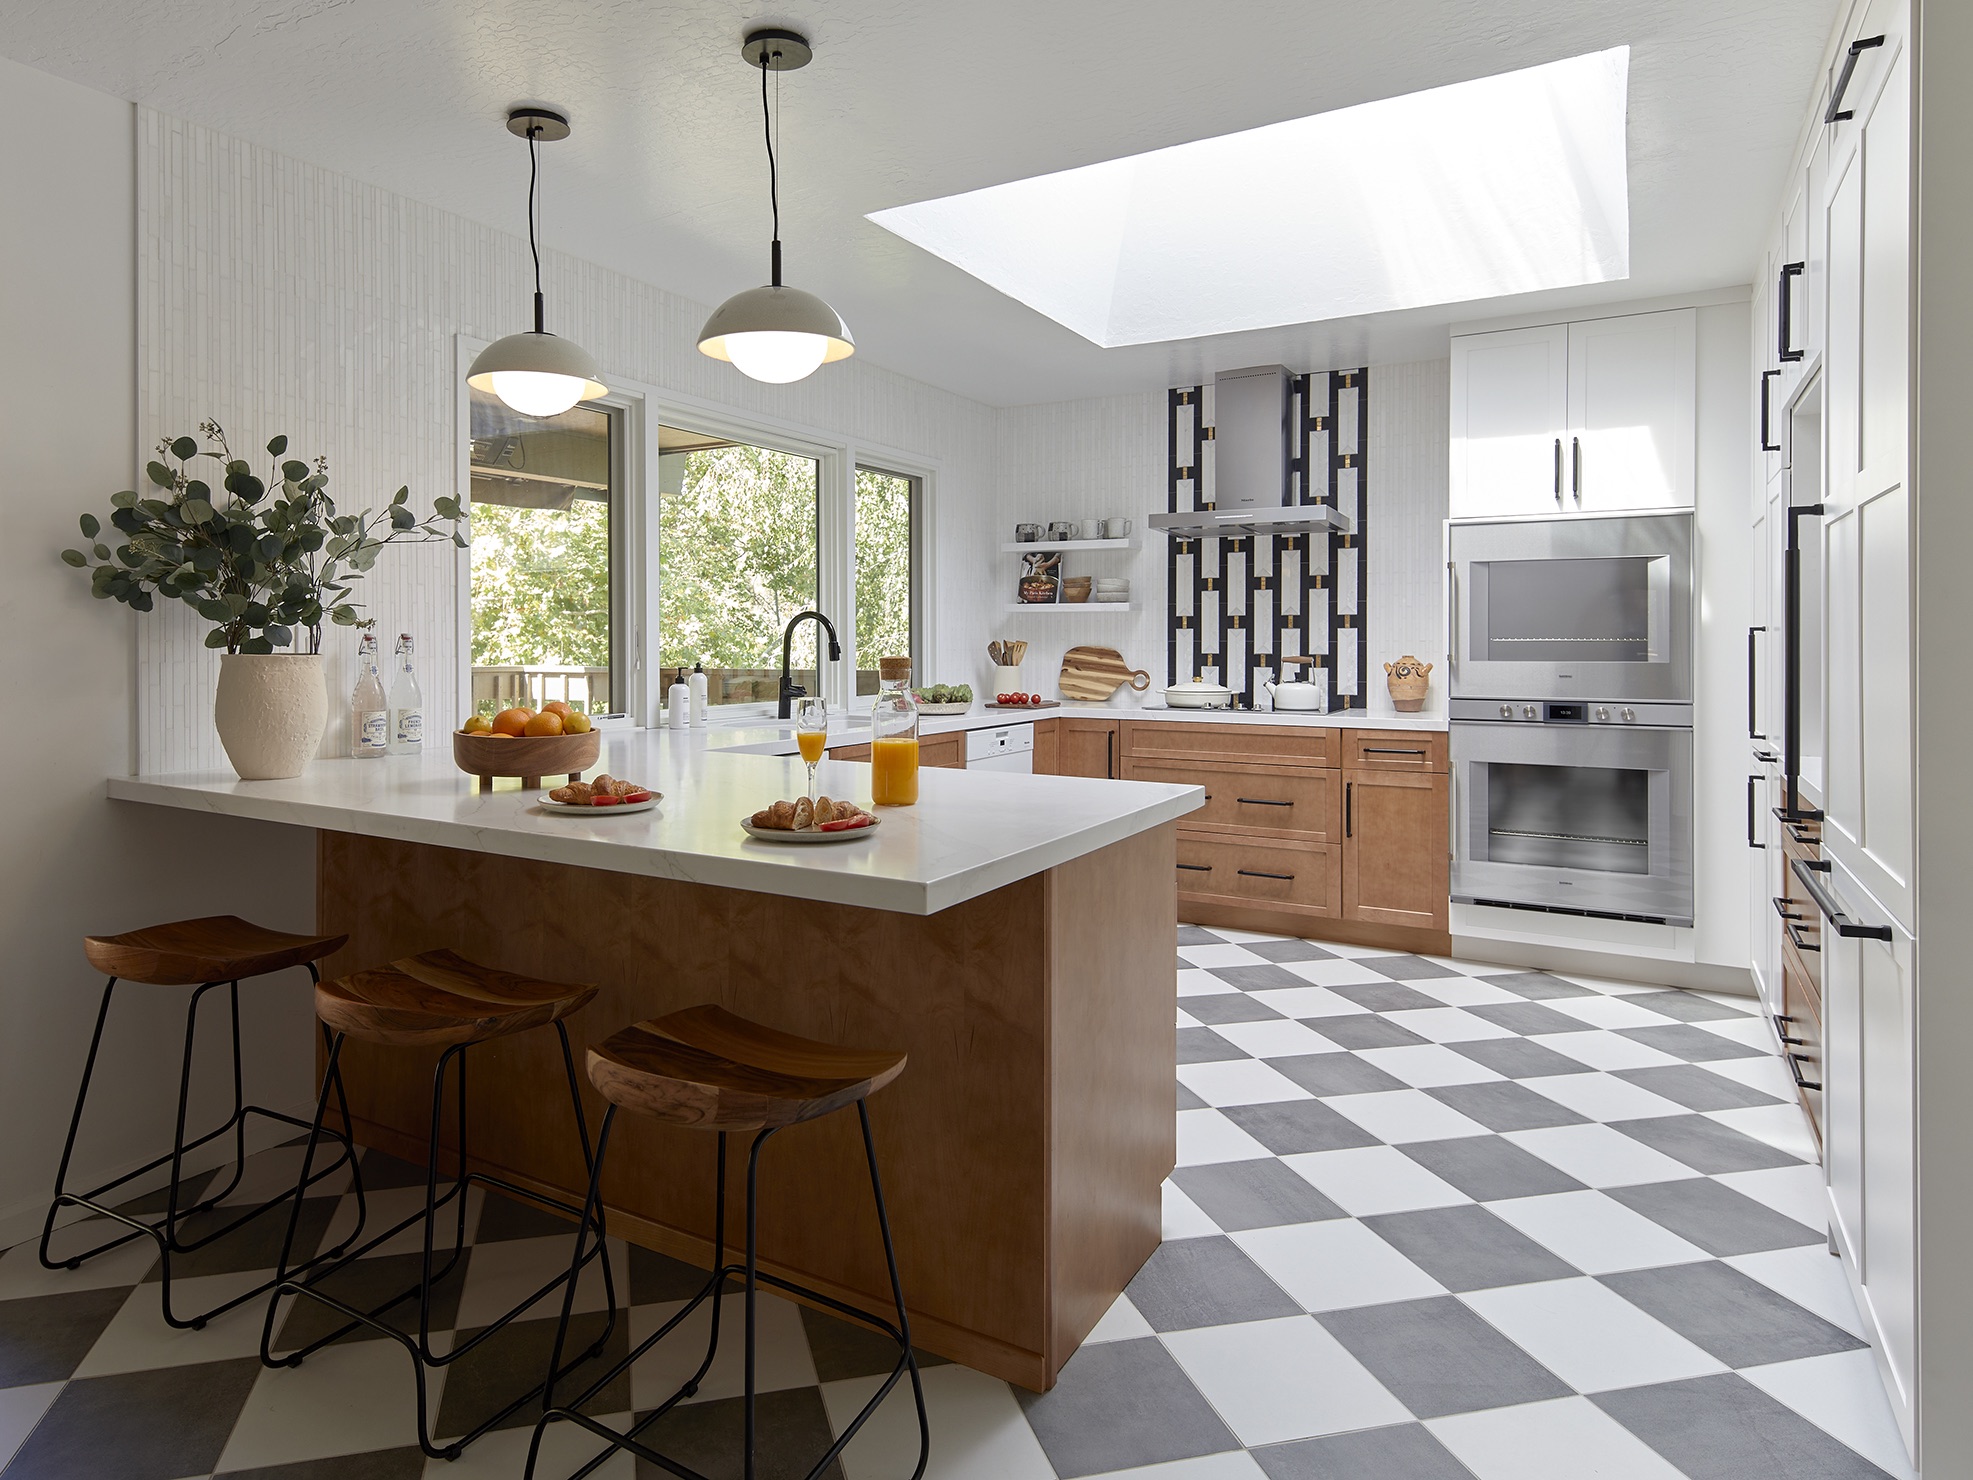 Home renovation in Los Altos Hills by Bay Area interior designer, Kanika Design - 02